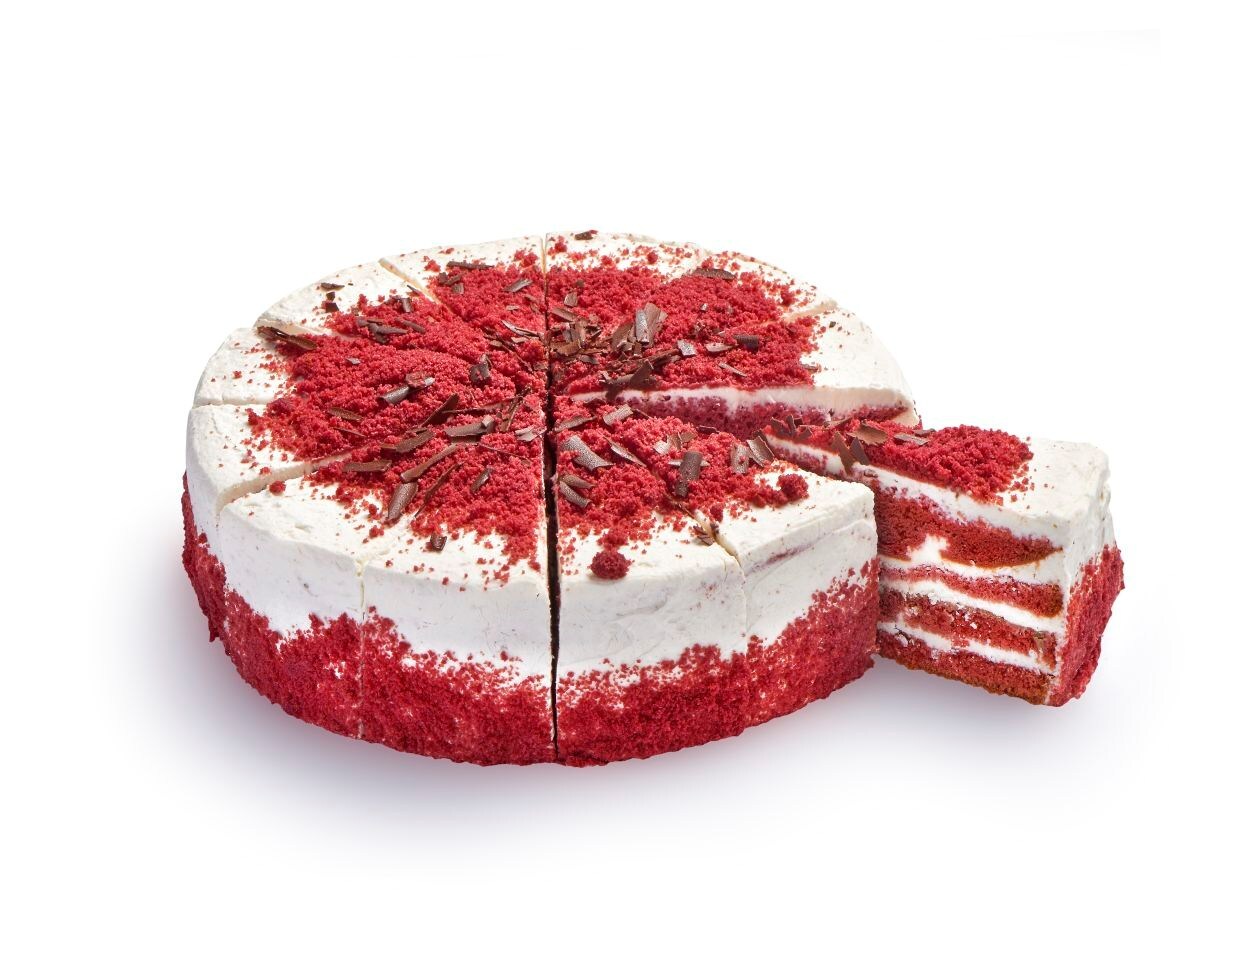 67126 High cake red velvet 1900 gram